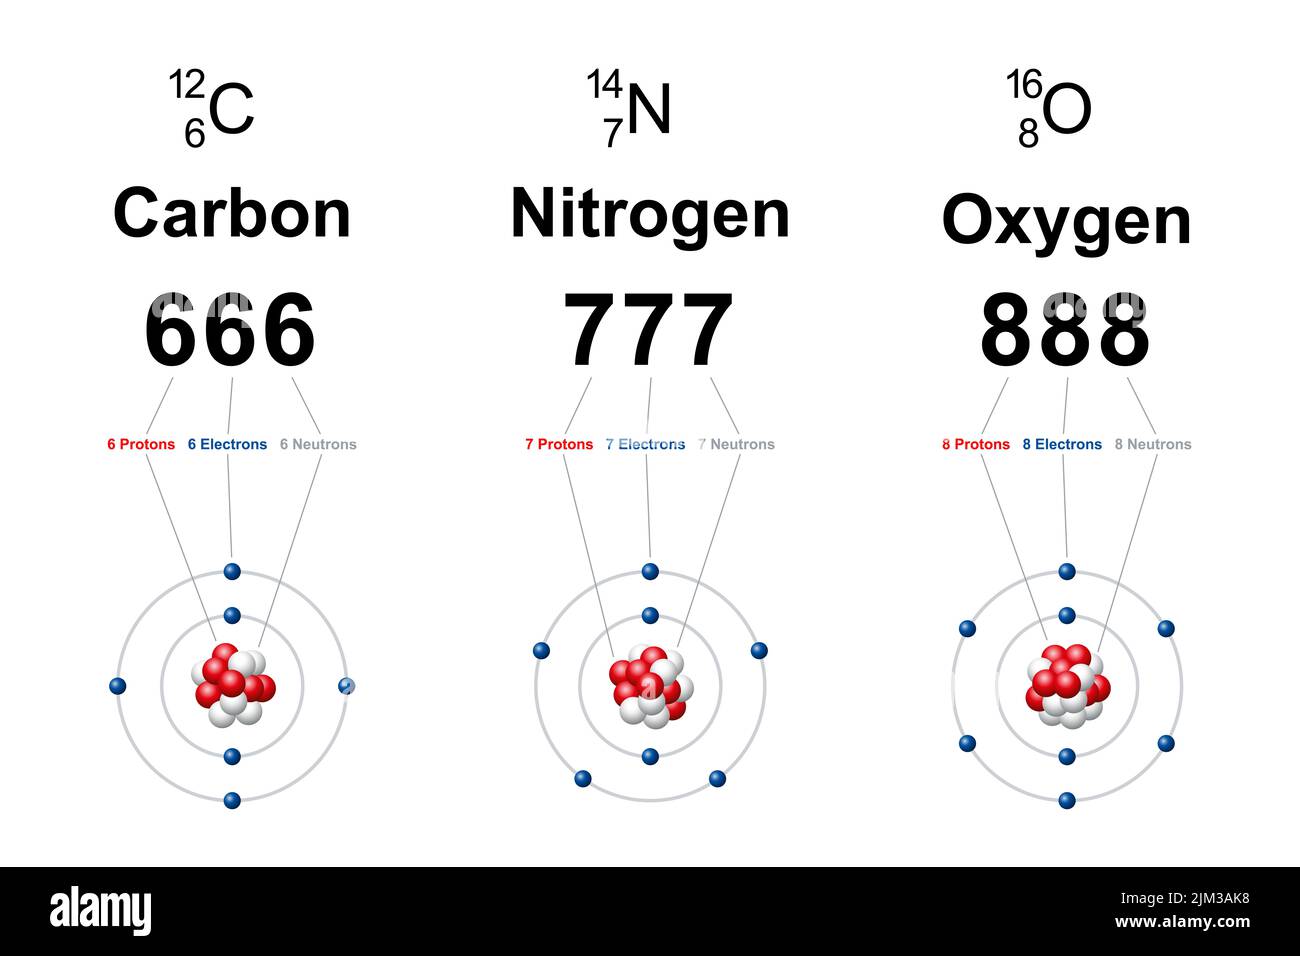 Numerology of regular carbon, nitrogen and oxygen atoms. Bohr models showing number 666 for carbon, 777 for nitrogen and 888 for oxygen. Stock Photo